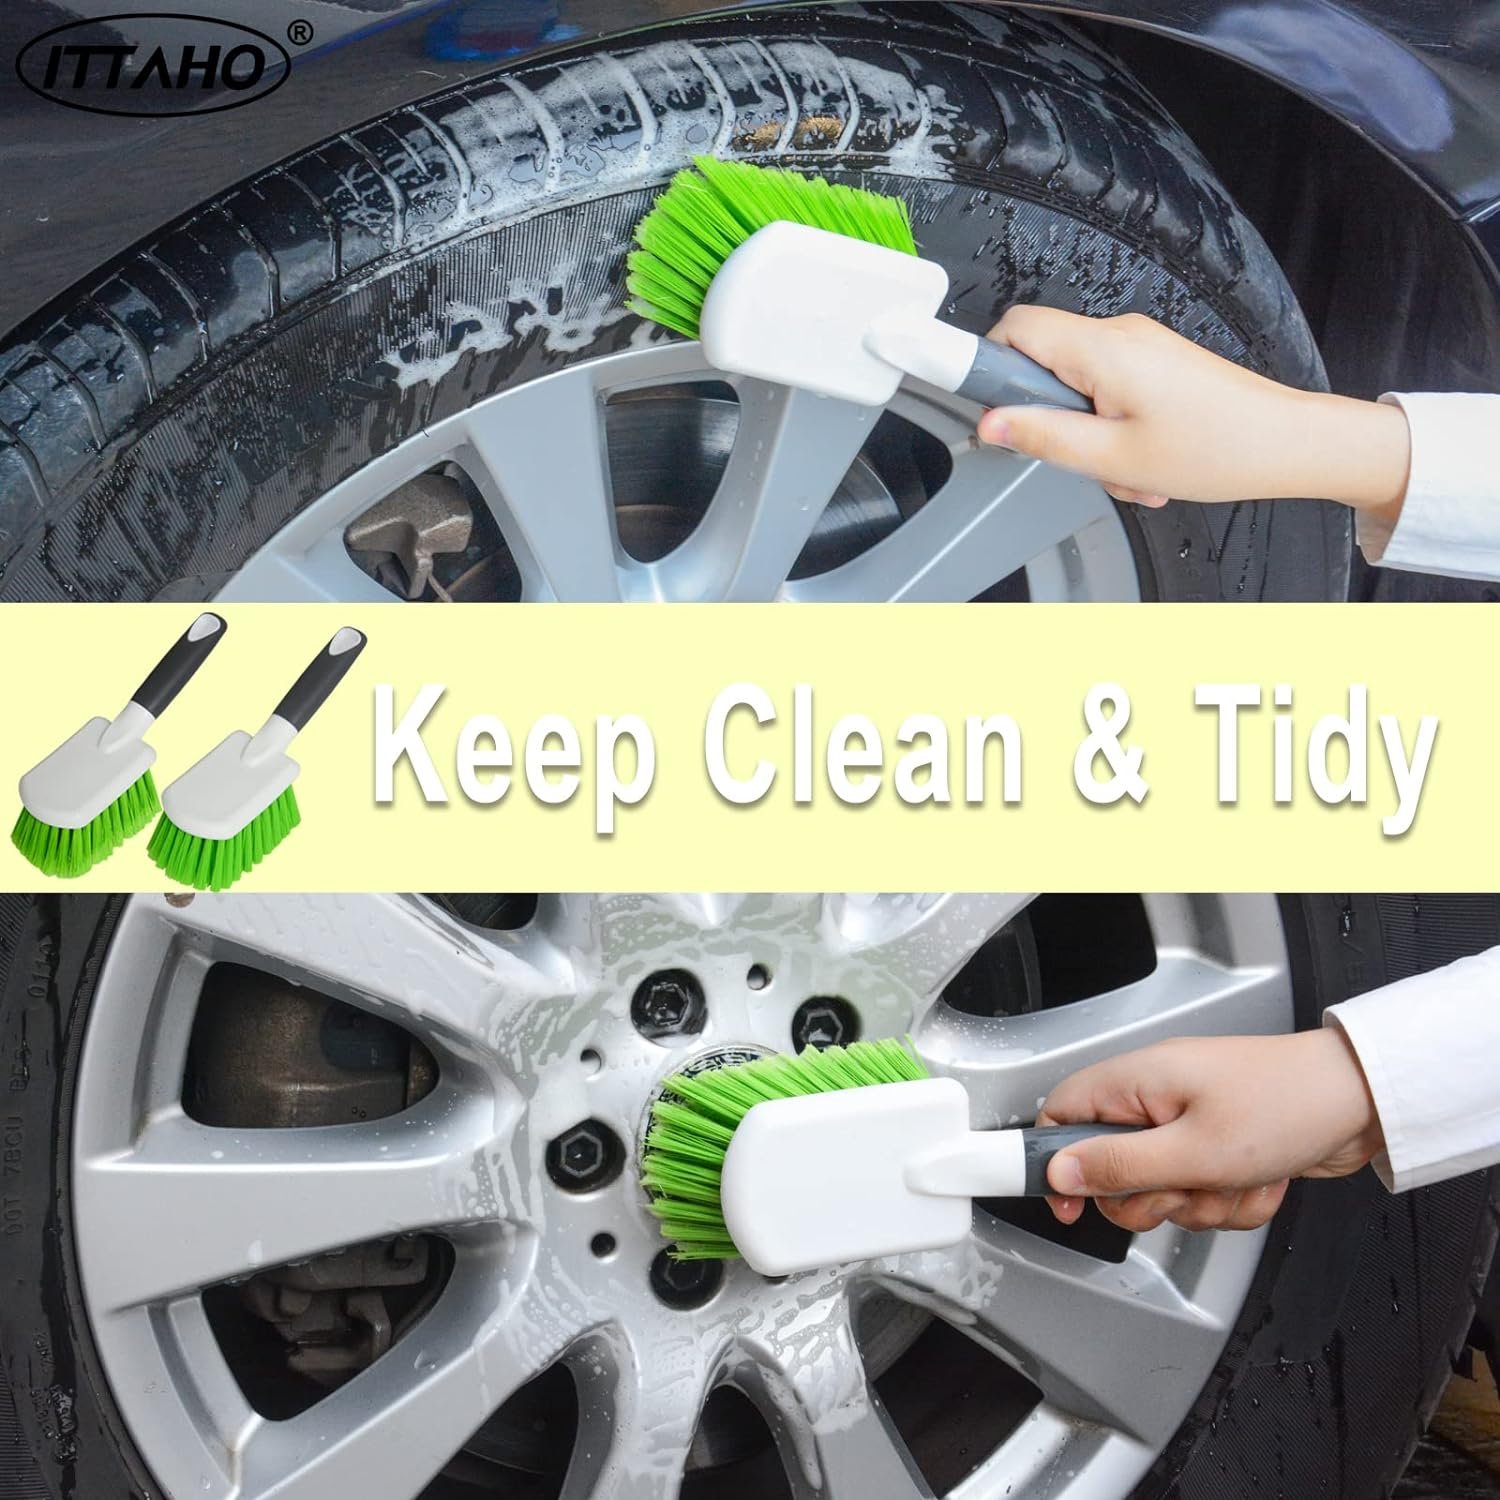 ITTAHO Car Wash Brush Review